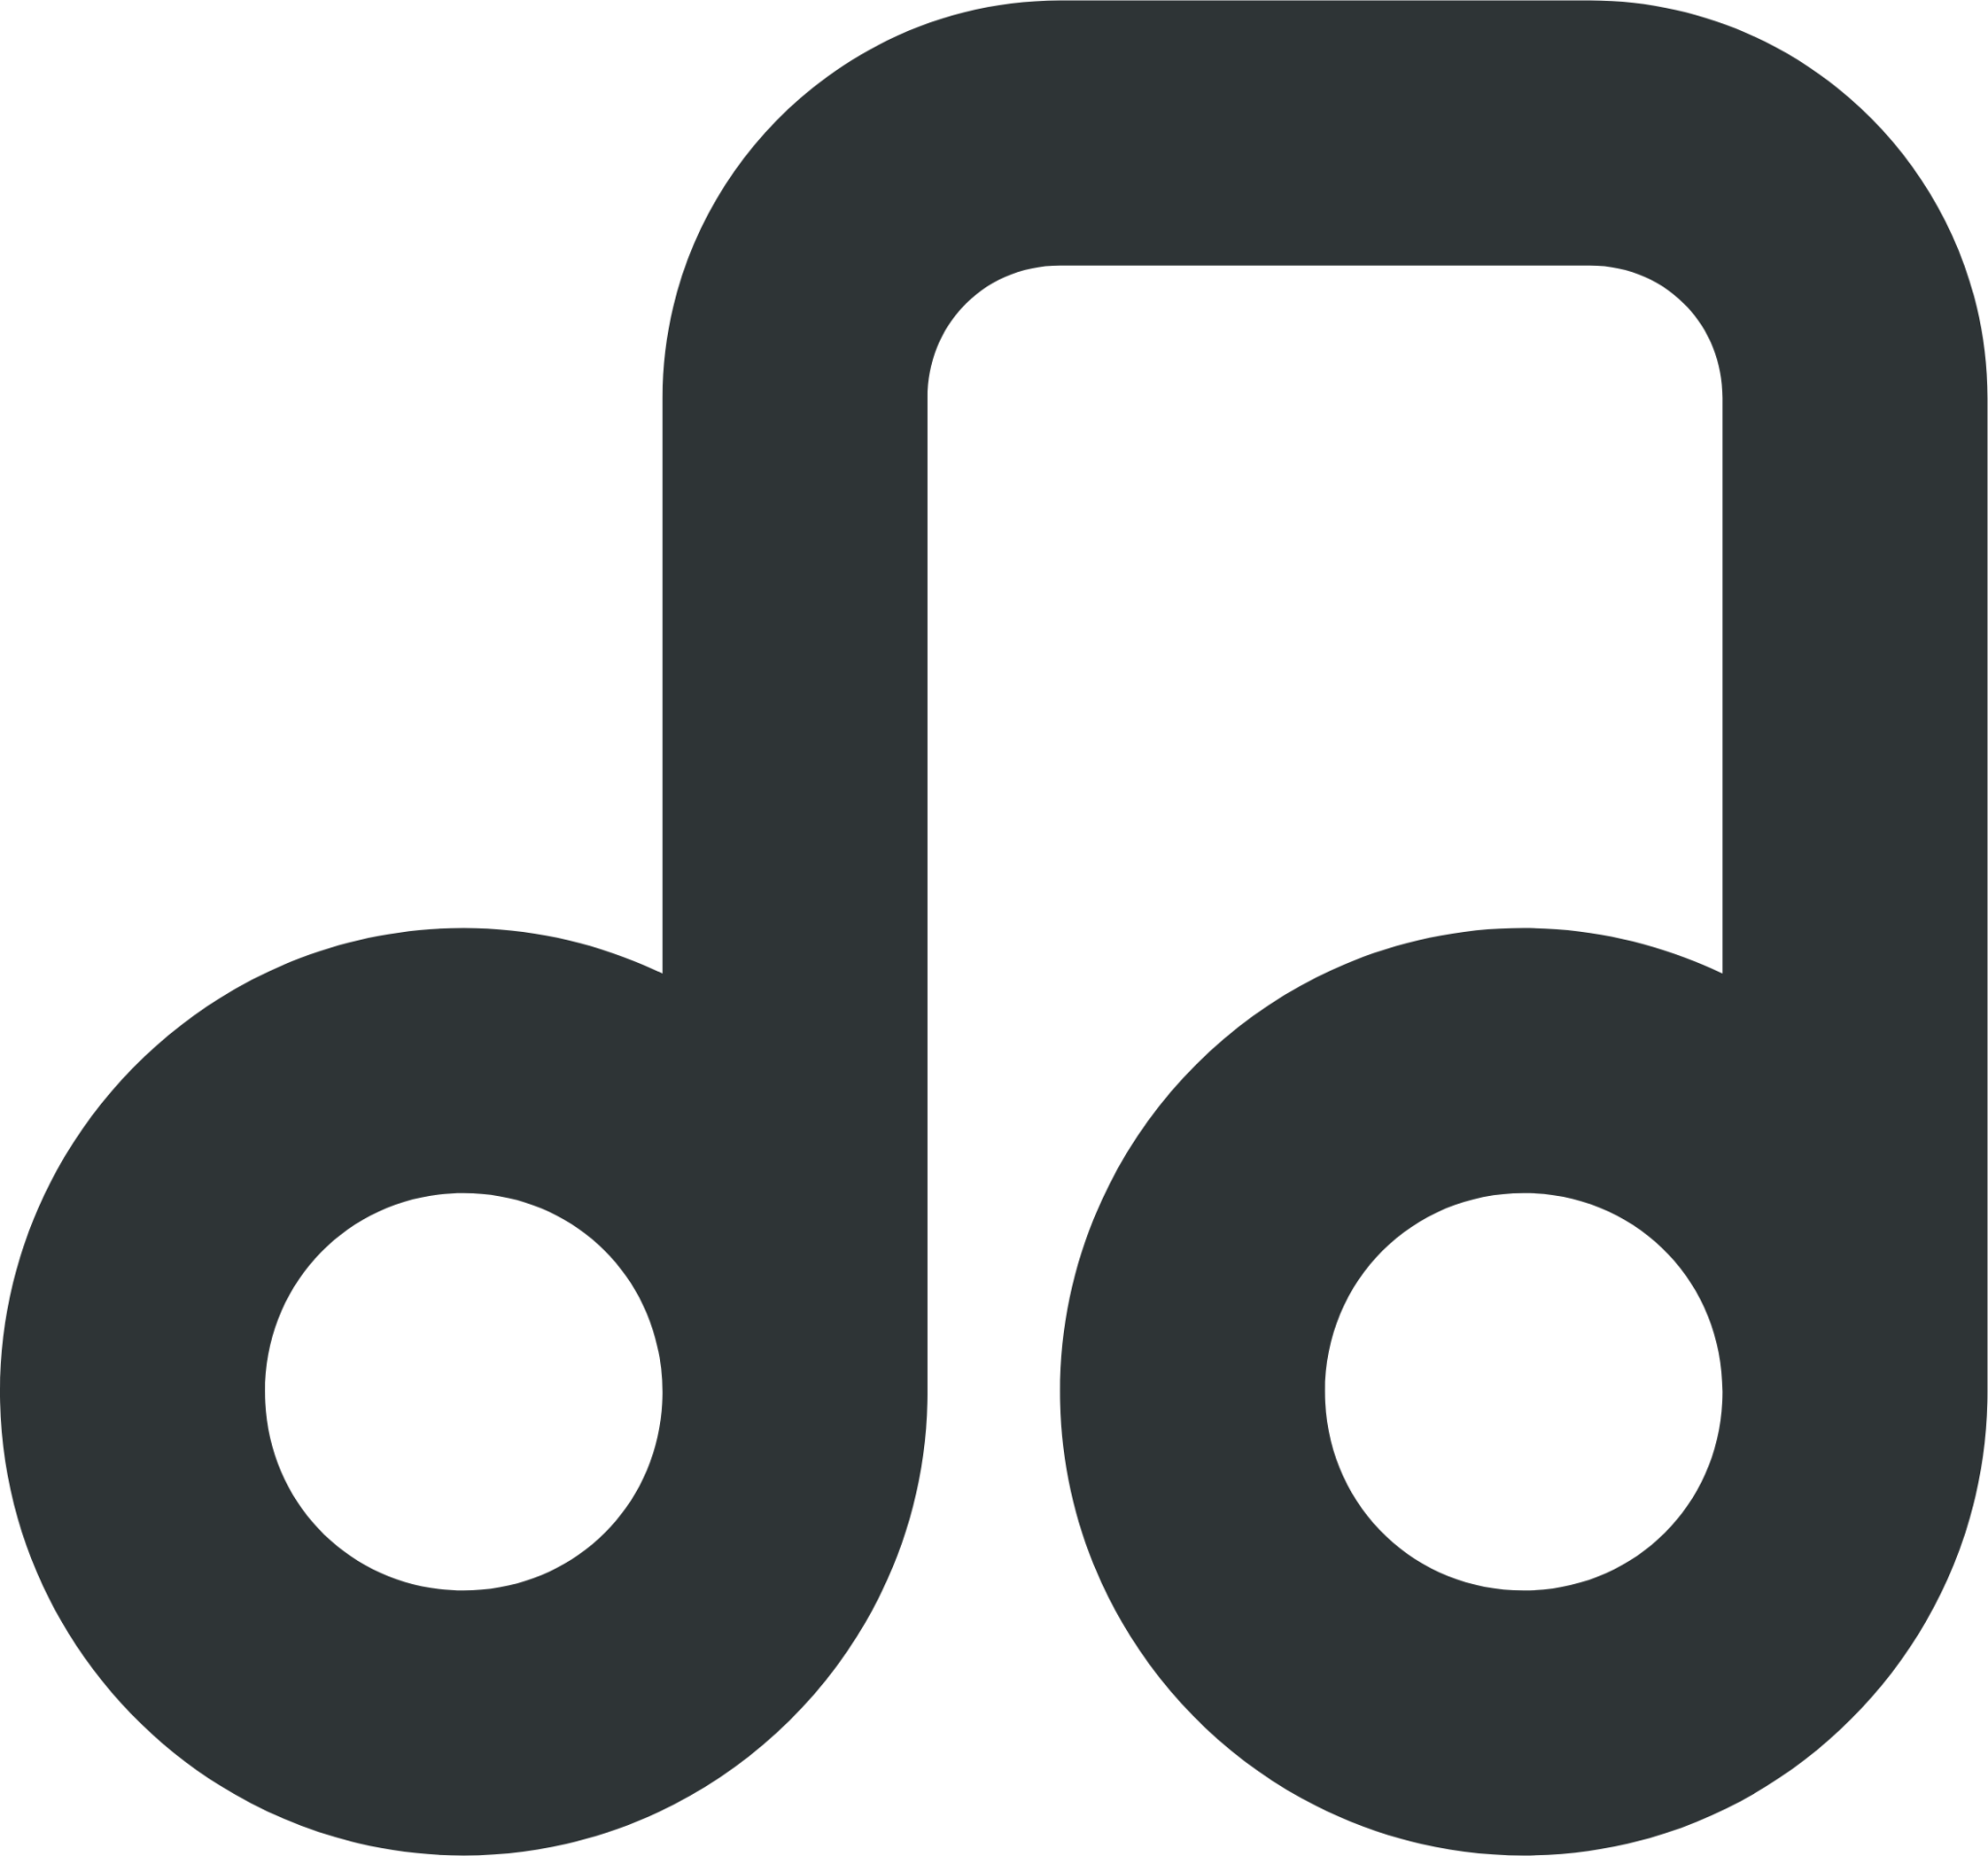 emblem music symbolic icon